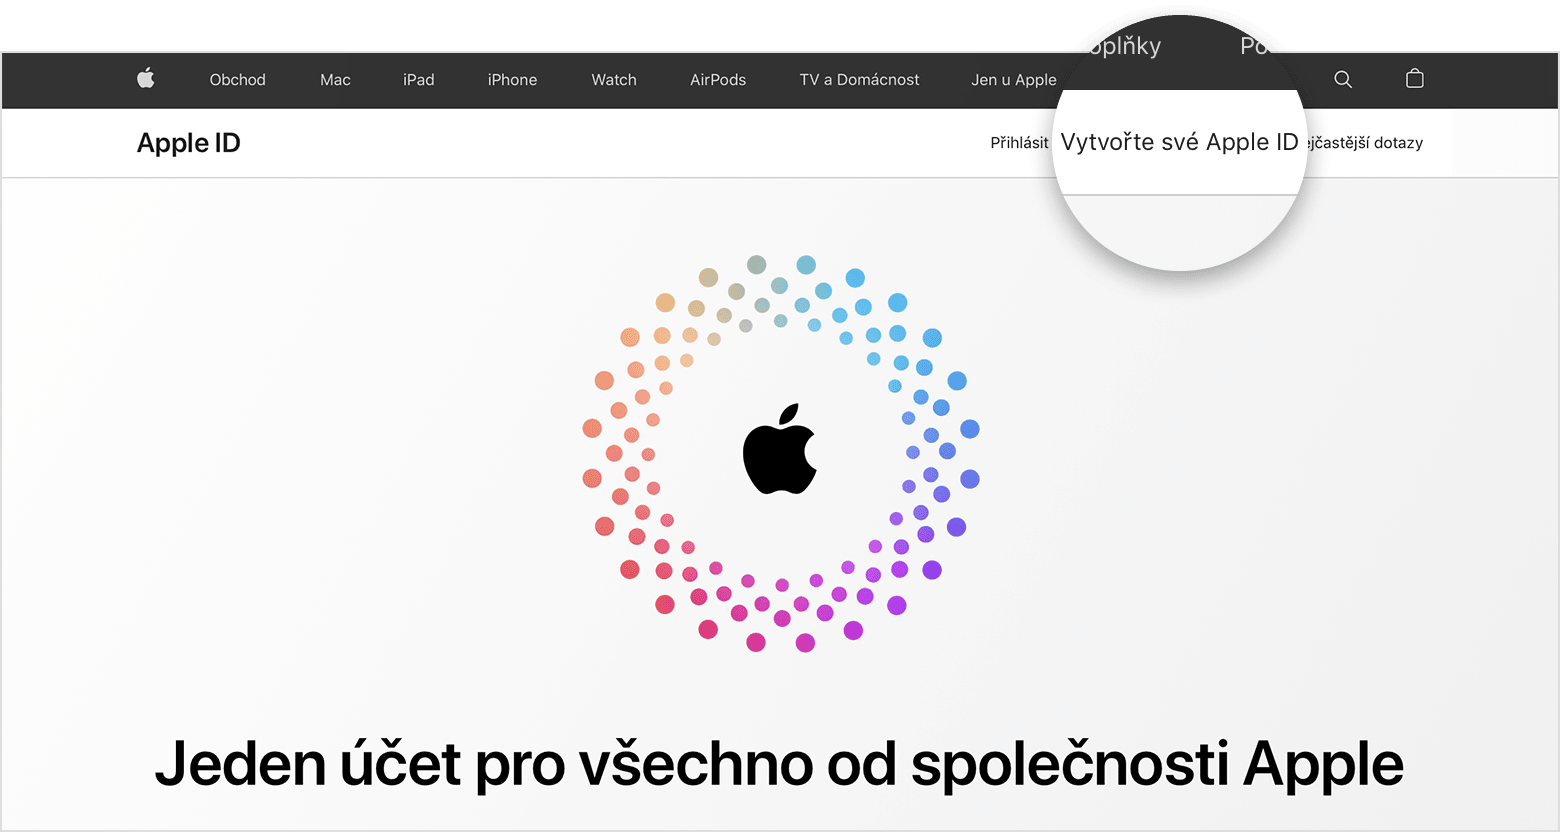 Snímek obrazovky appleid.apple.com, na kterém je uprostřed logo Apple, které je obklopené soustřednými barevnými kruhy.